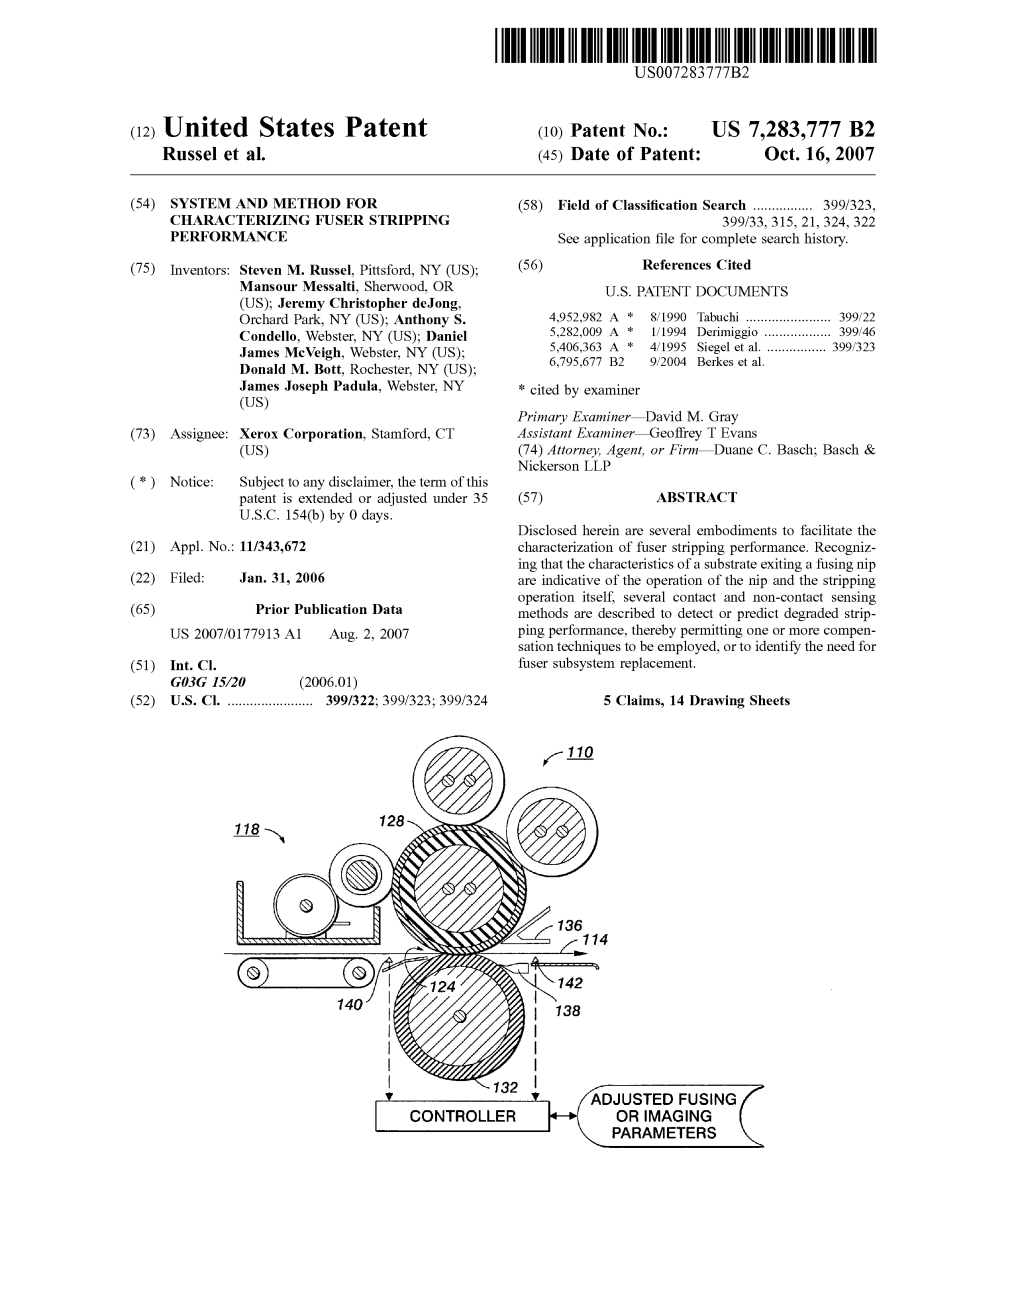 (12) United States Patent (10) Patent N0.: US 7,283,777 B2 Russel Et Al